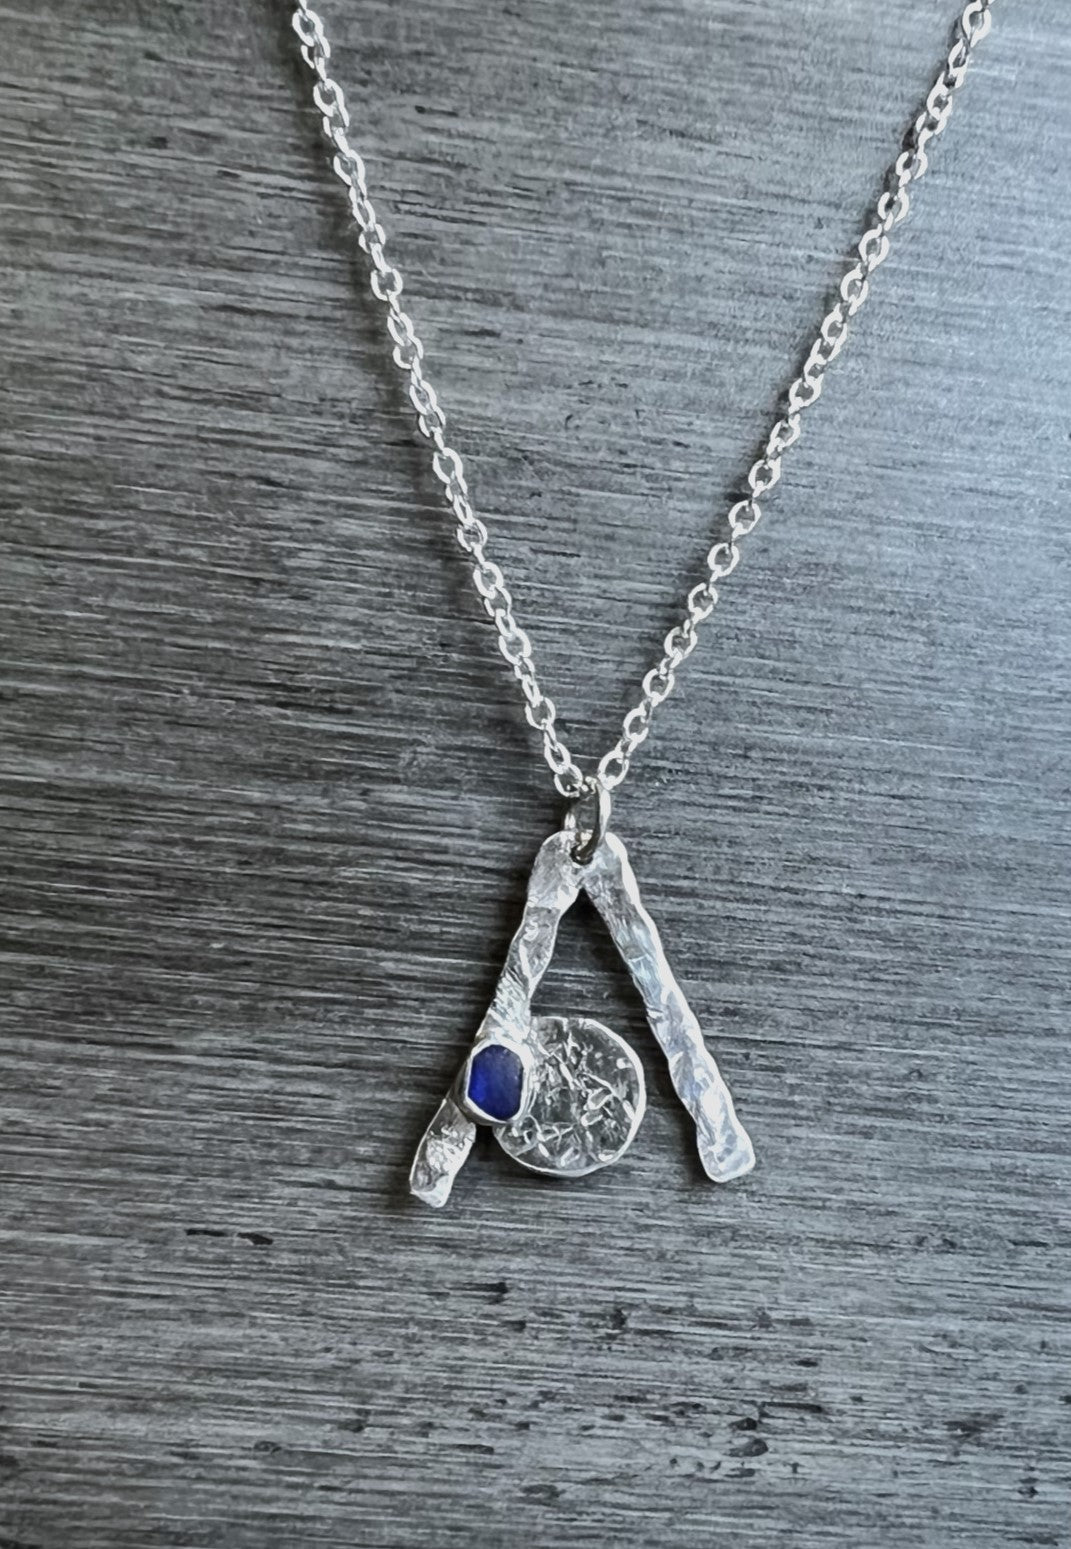 Cobalt Blue Seaglass Necklace